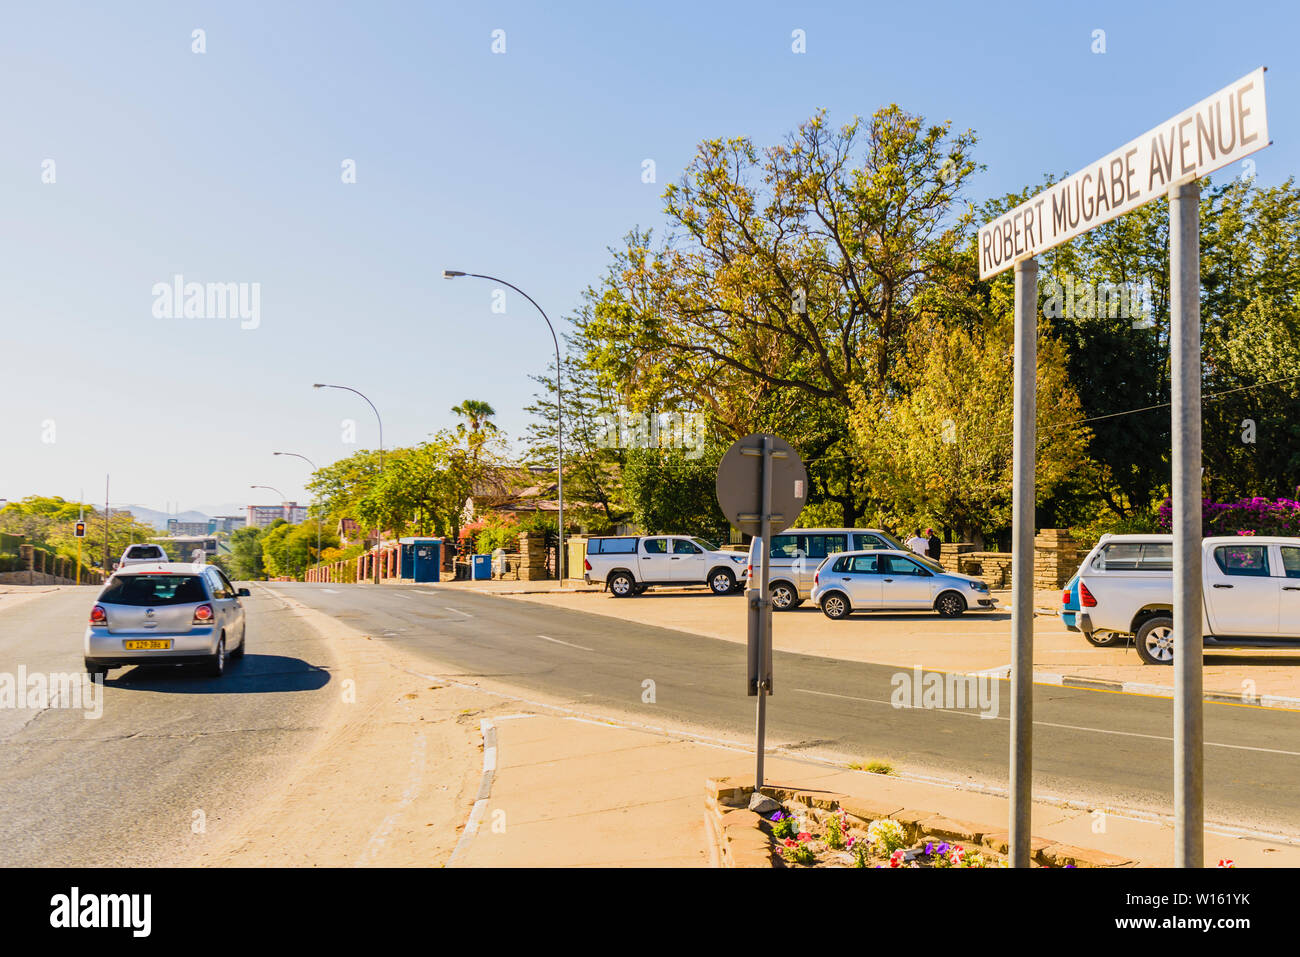 Robert Mugabe Avenue, Windhoek, Namibia Stock Photo